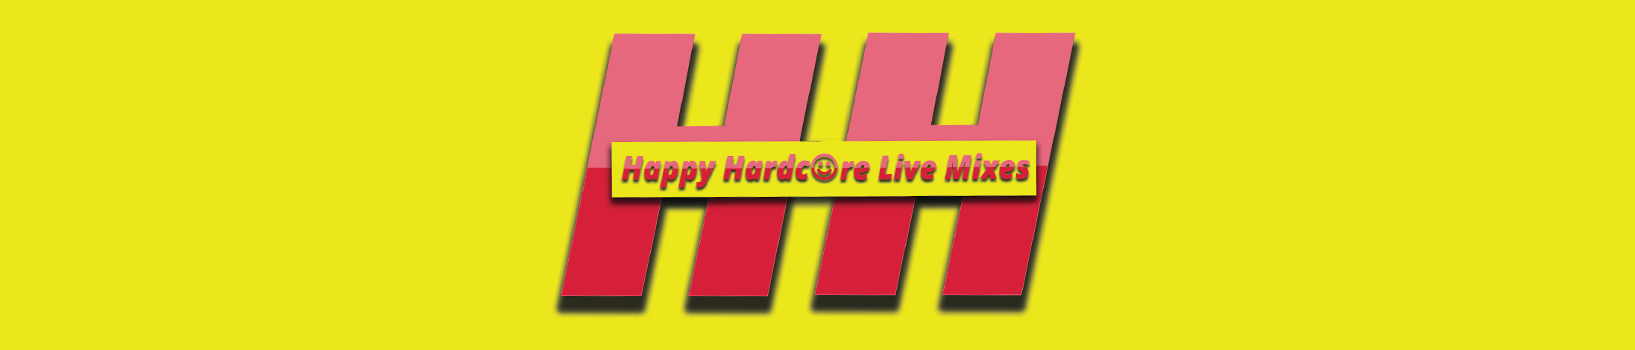 Happy Hardcore Live Mixes